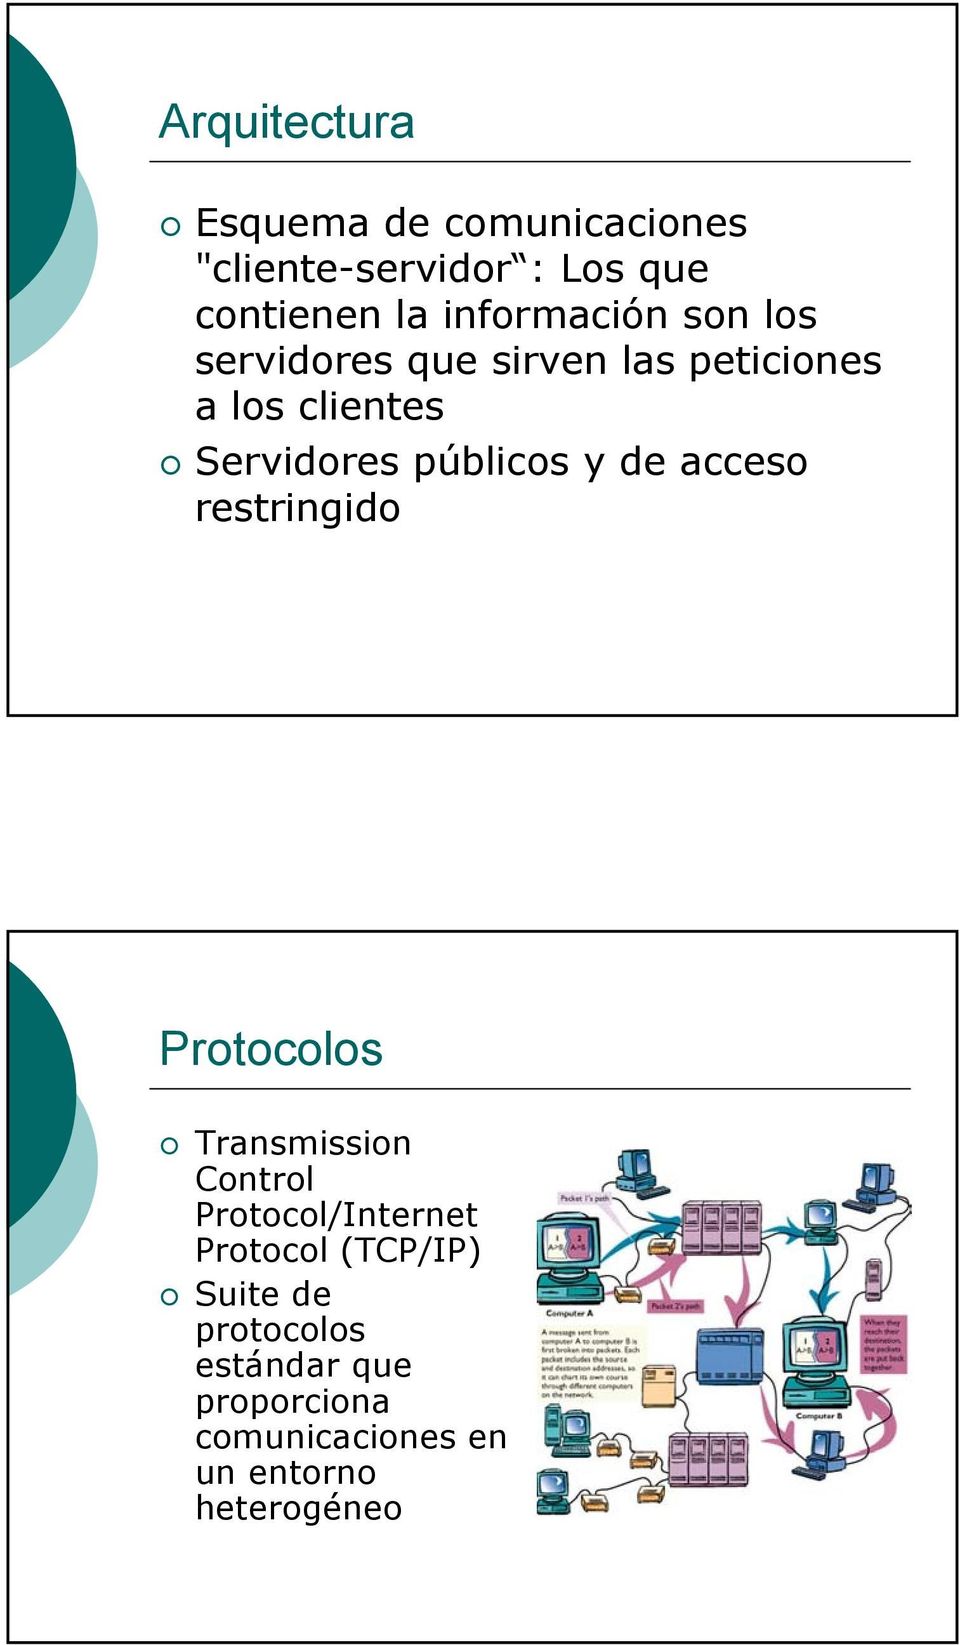 públicos y de acceso restringido Protocolos Transmission Control Protocol/Internet